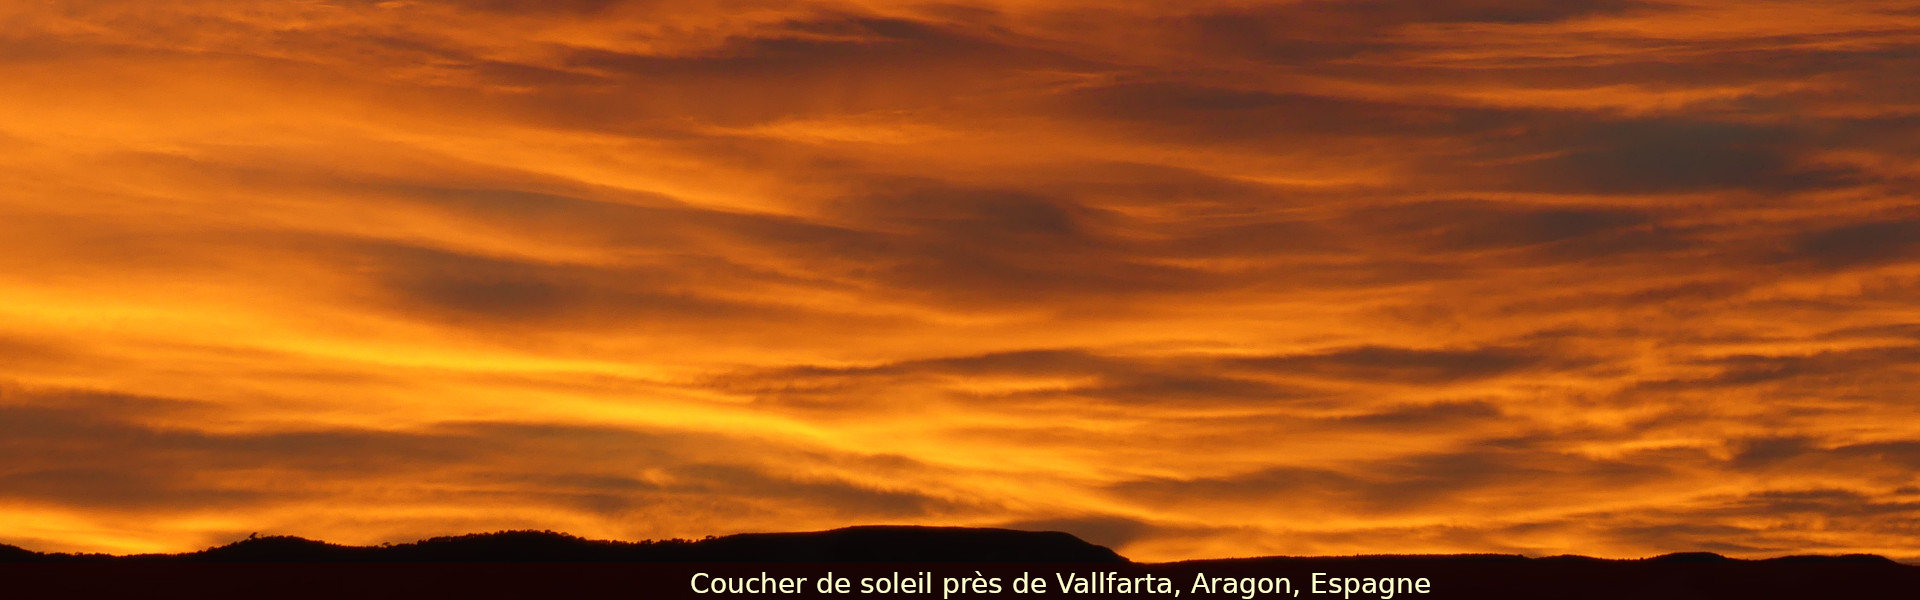 Coucher de soleil sur Vallfarta, Aragon, Espagne